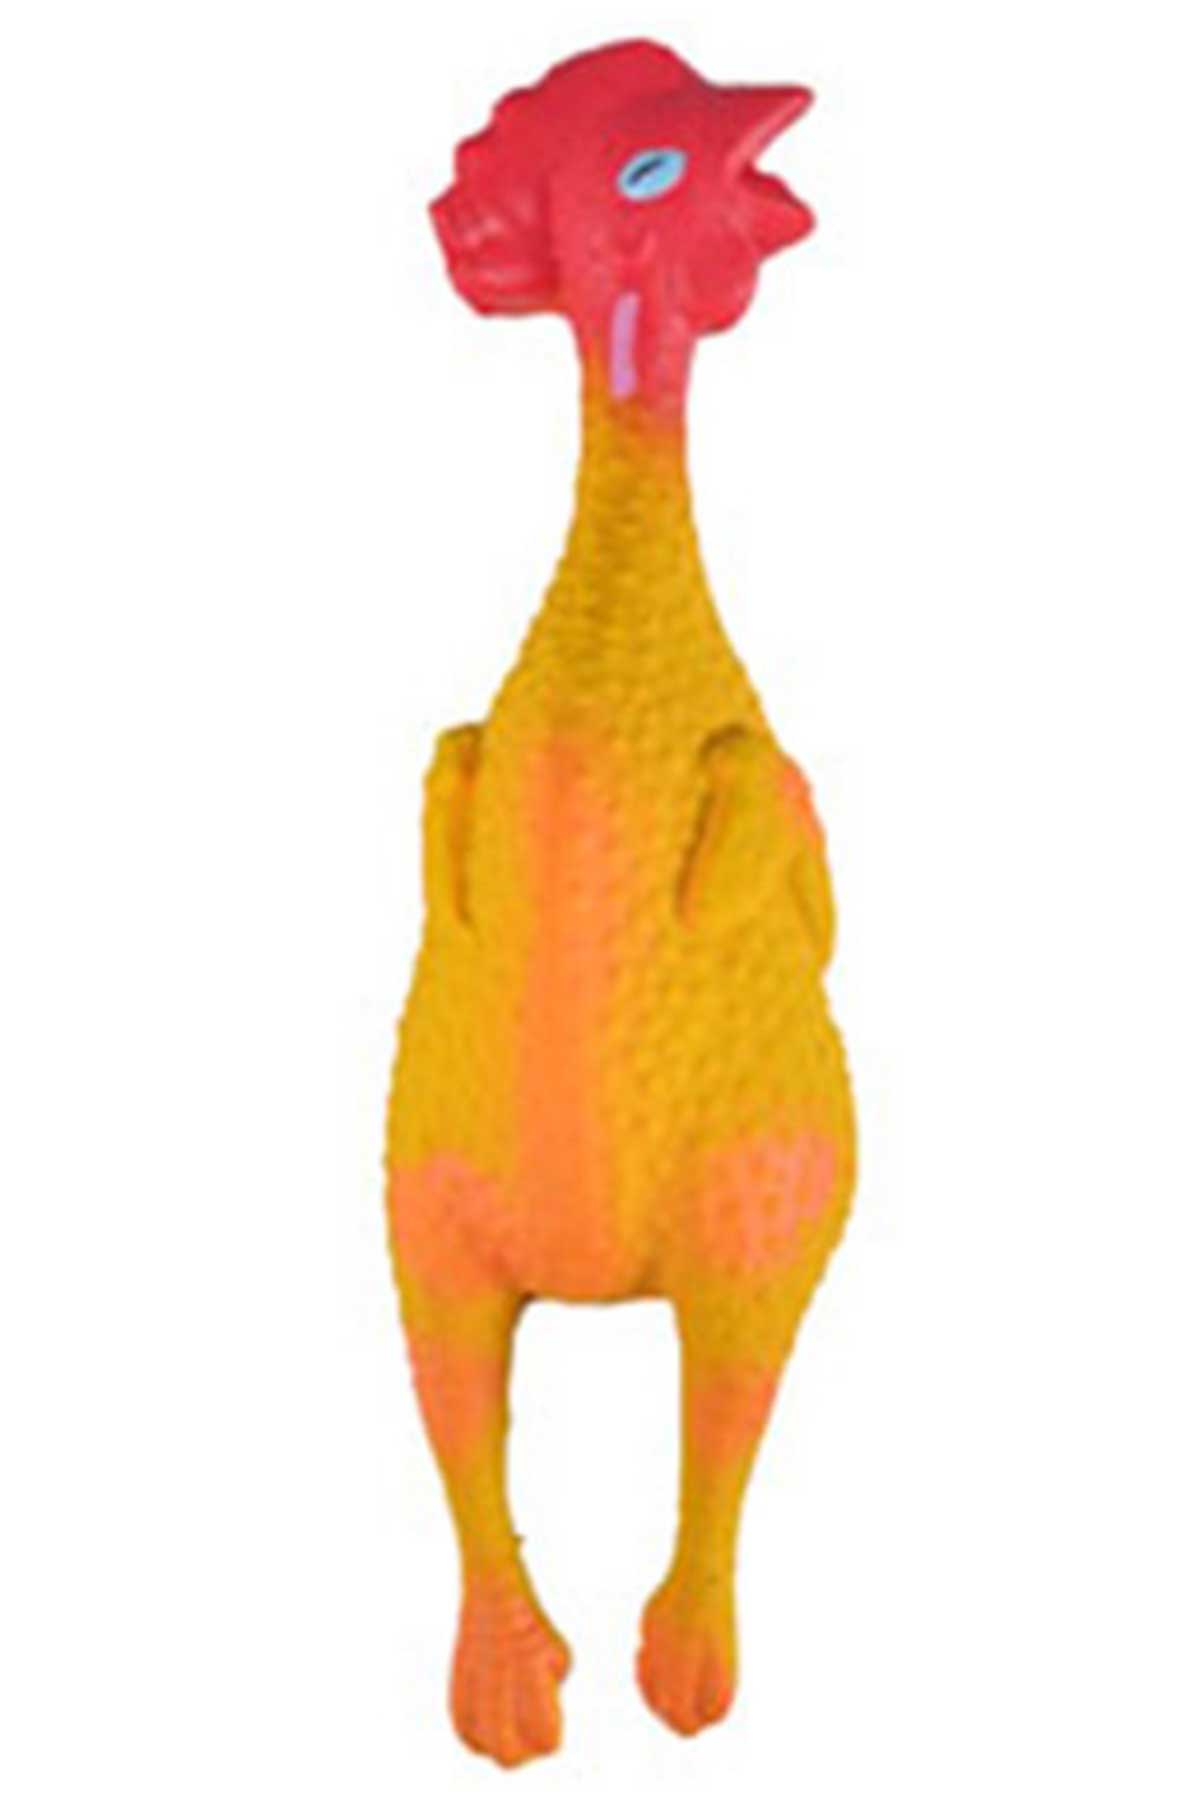 Flamingo Gallina Tavuklu Köpek Oyuncağı 14 Cm